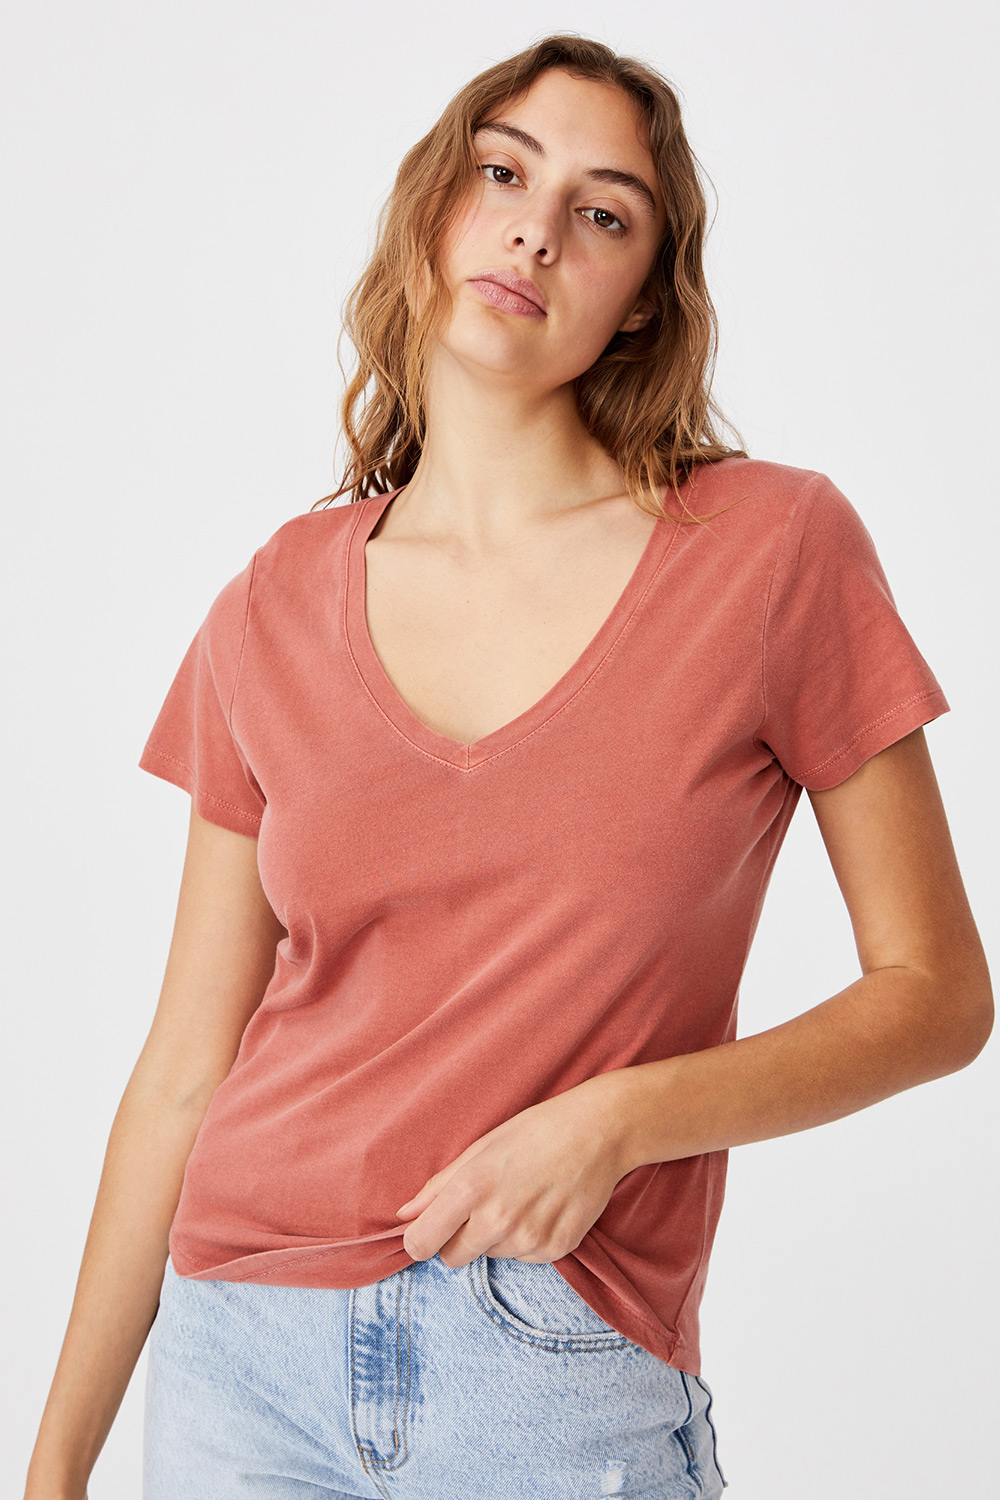 Γυναικεία basic κοντομάνικη μπλούζα One κεραμιδί | Astratex.gr